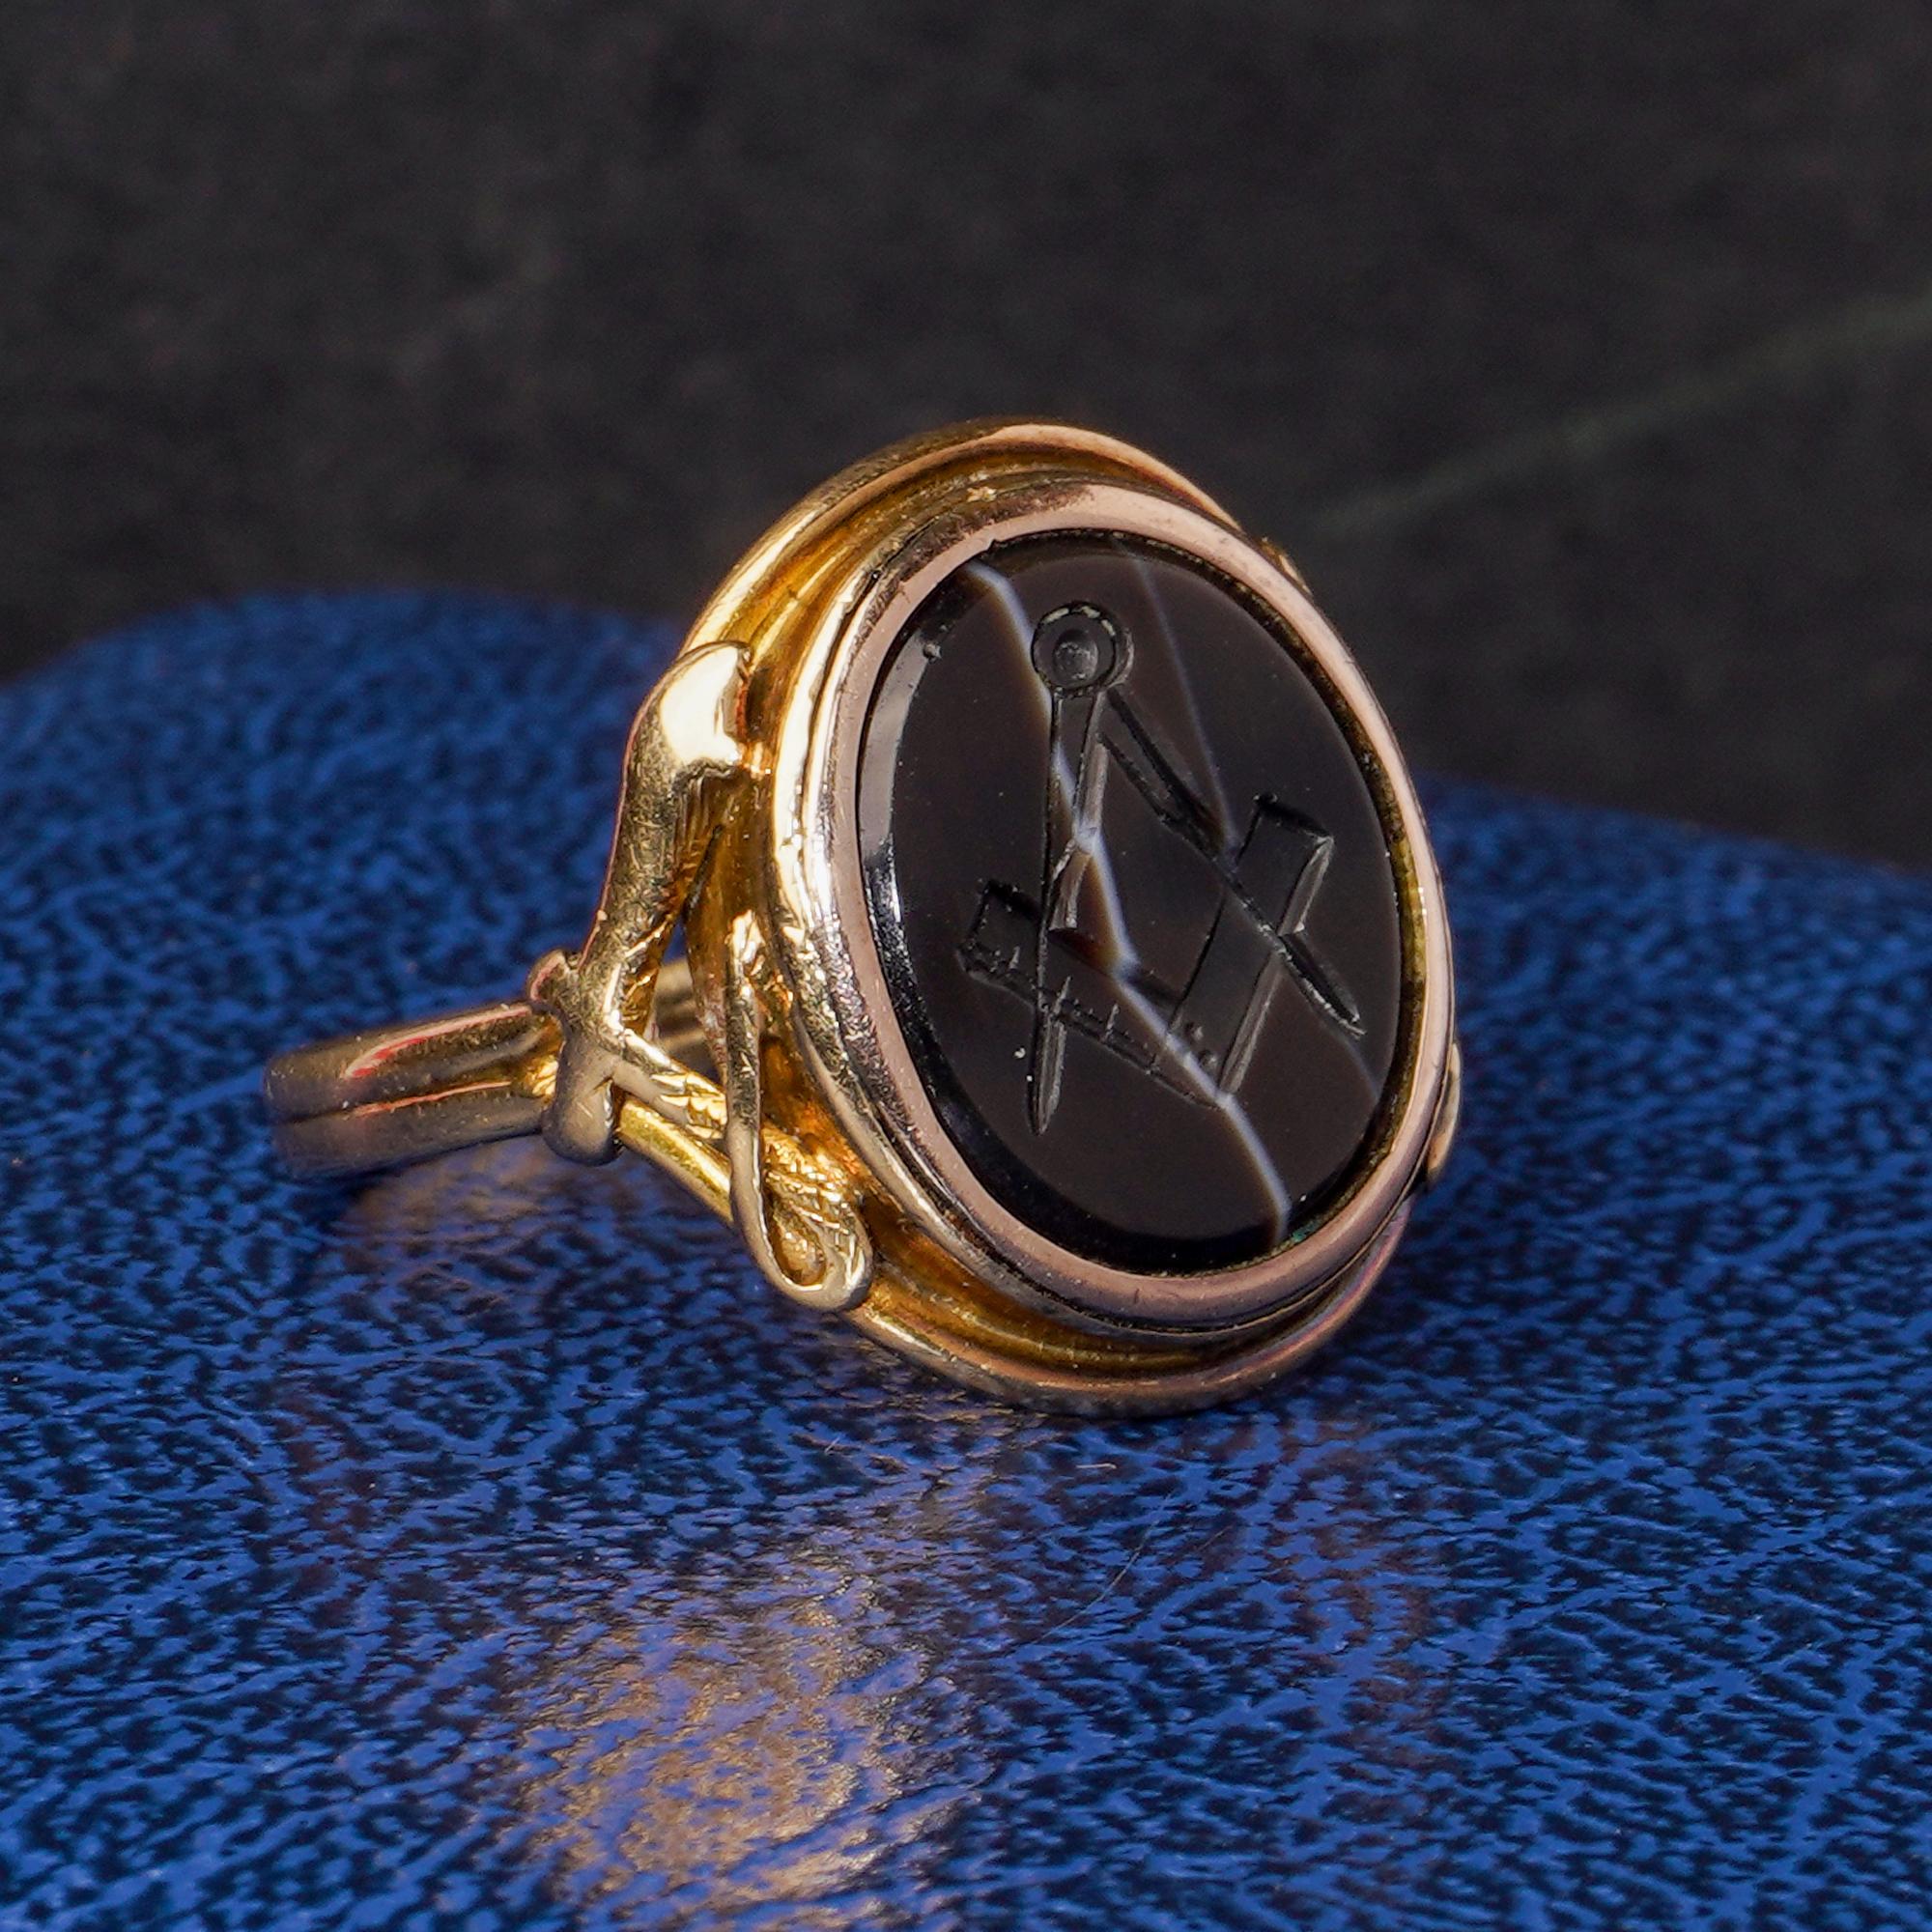 Bague maçonnique victorienne ancienne en or jaune 18 ct. représentant une équerre et un compas.
Fabriqué en Angleterre, vers 1870
Les rayons X ont révélé la présence d'or 18kt.

Si de nombreux symboles sont associés à la franc-maçonnerie, aucun